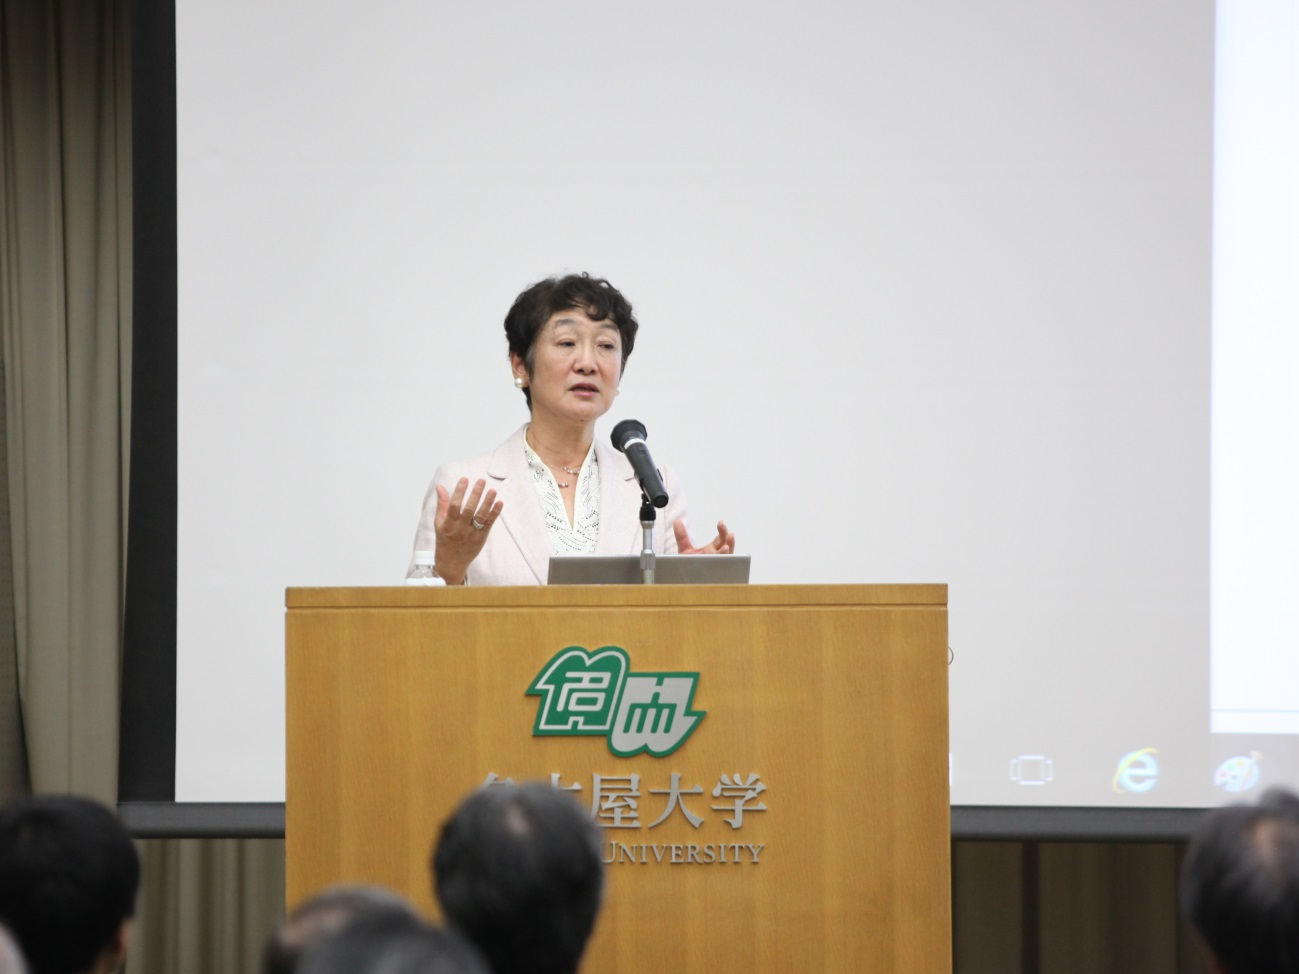 学術講演会「人工知能を大局的にとらえ，未来を考える」で講演される土井美和子先生